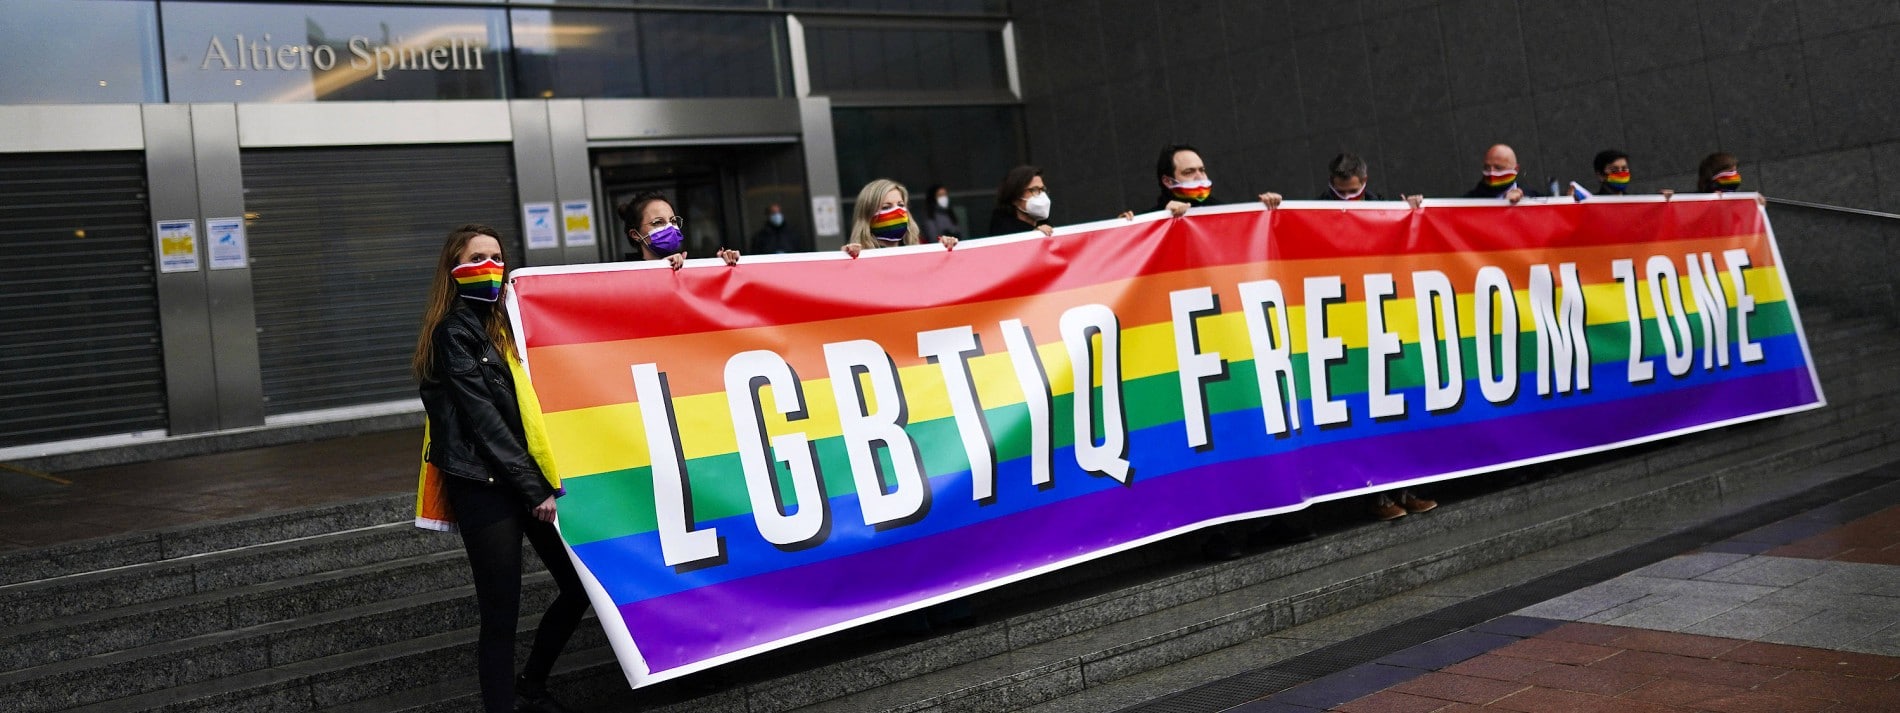 Hannover wird zum LGBTQI+ Freiheitsraum